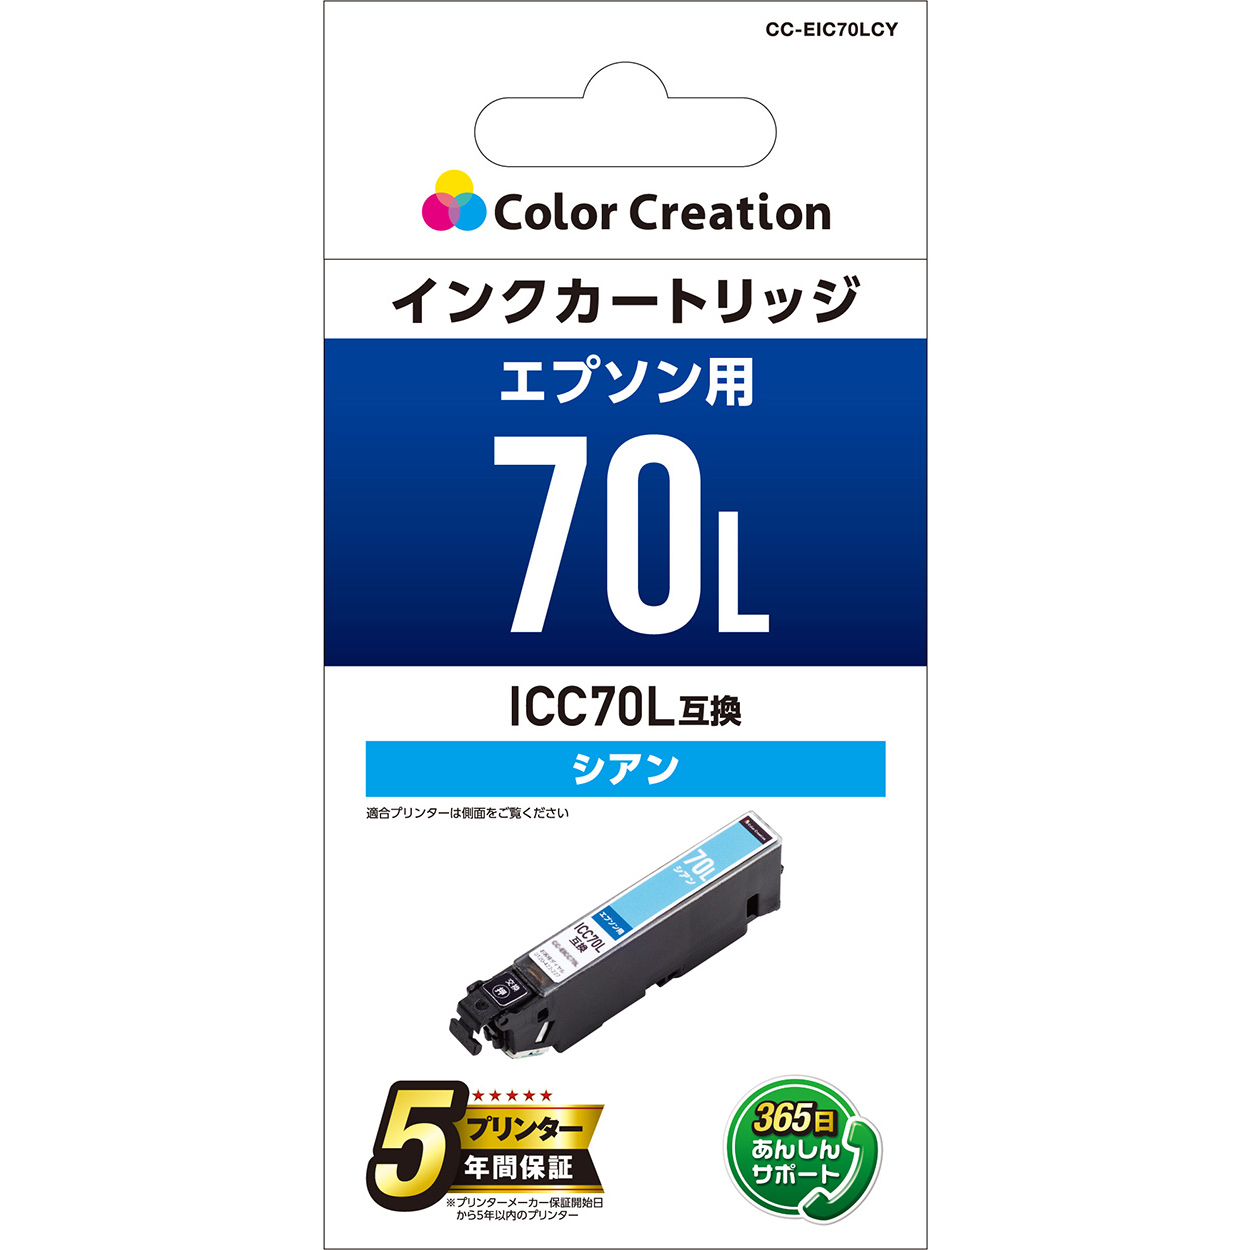 エプソン ICC70L互換 インクカートリッジ CC-EIC70LCY | ColorCreation